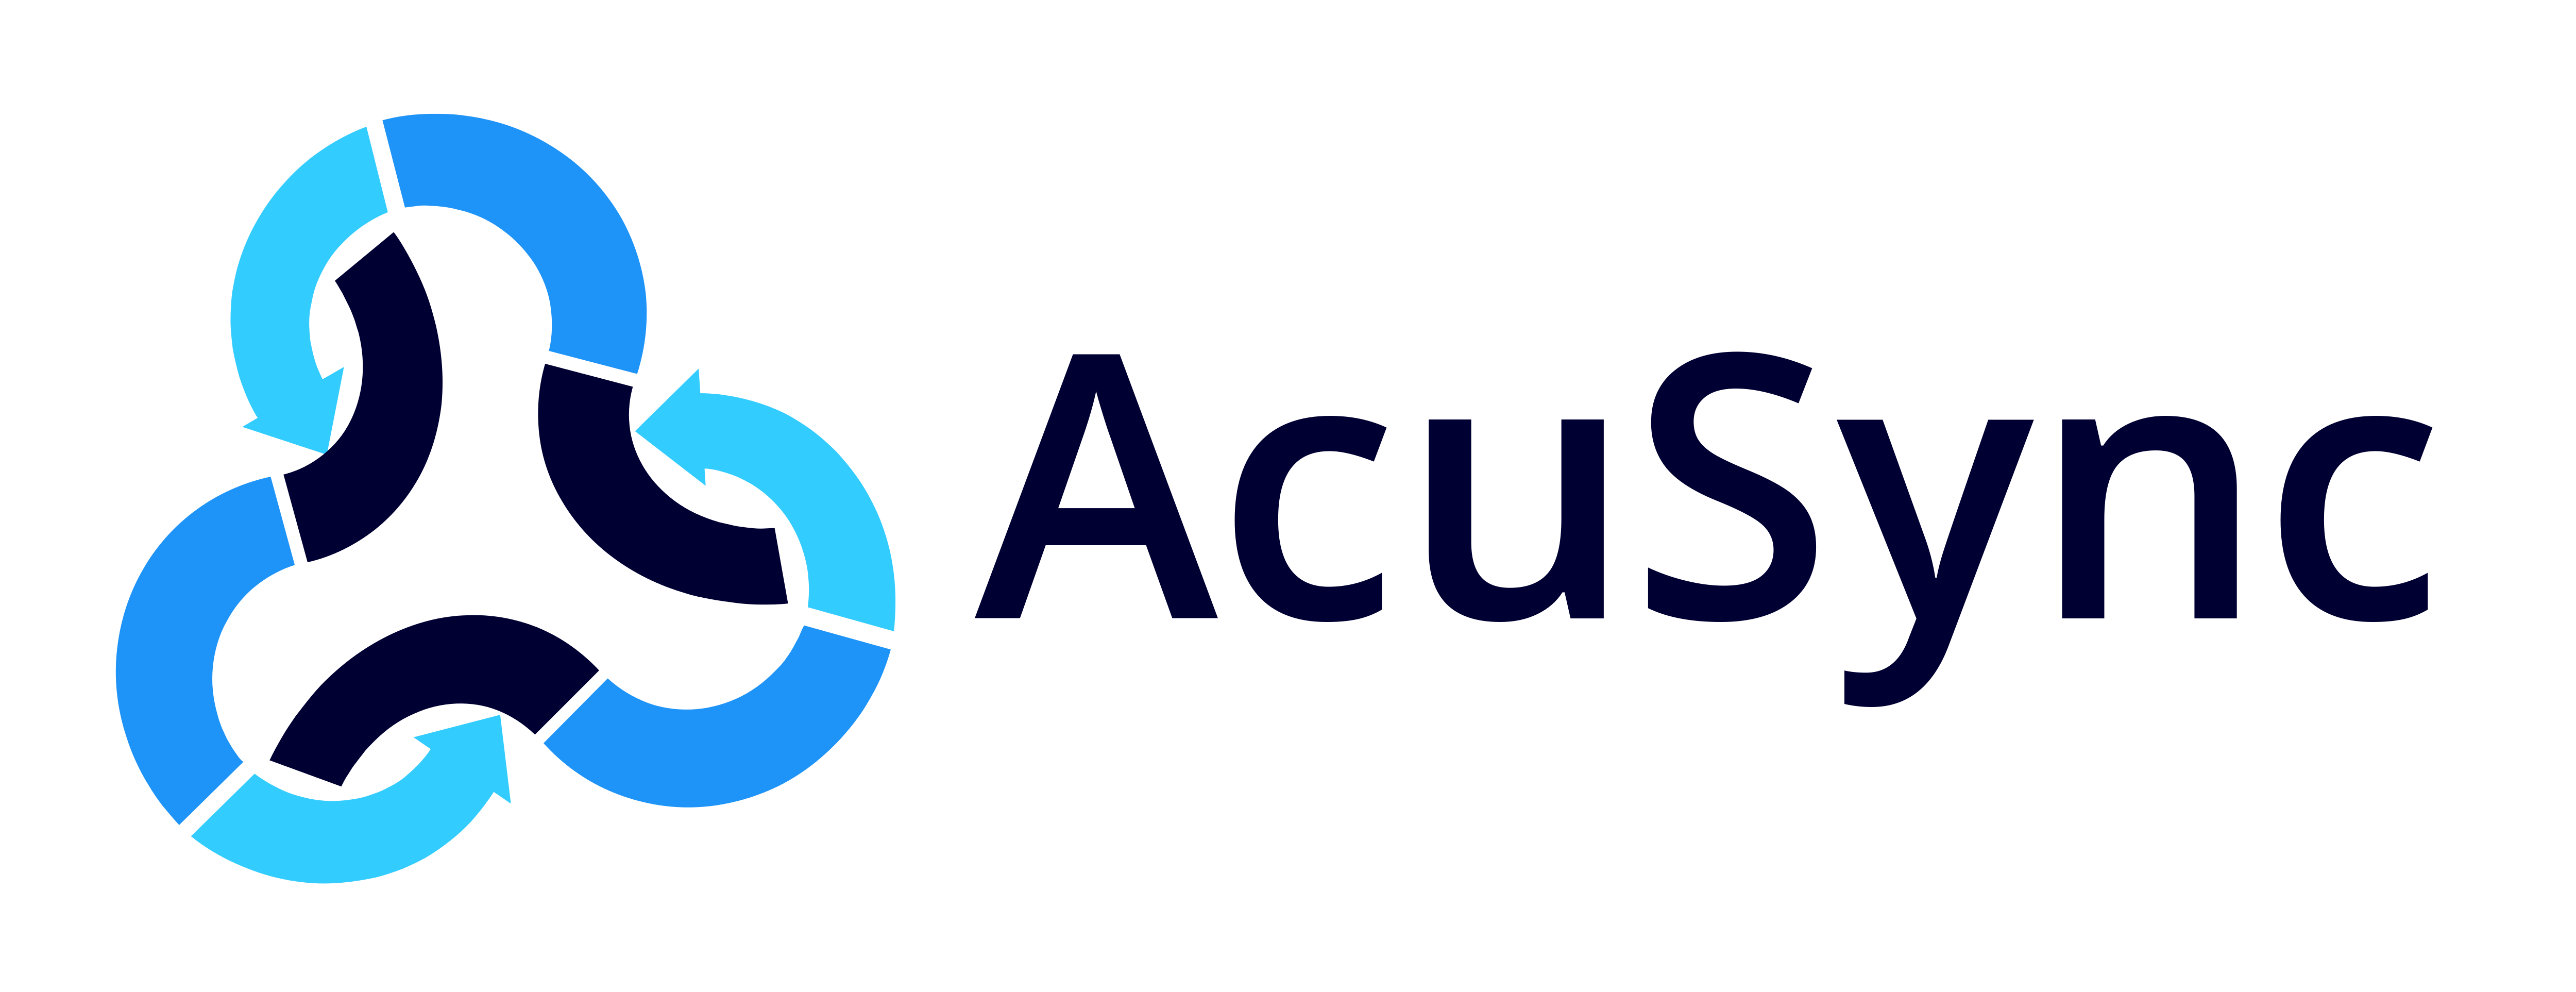 AcuSync - Soluciones innovadoras eclécticas LLC